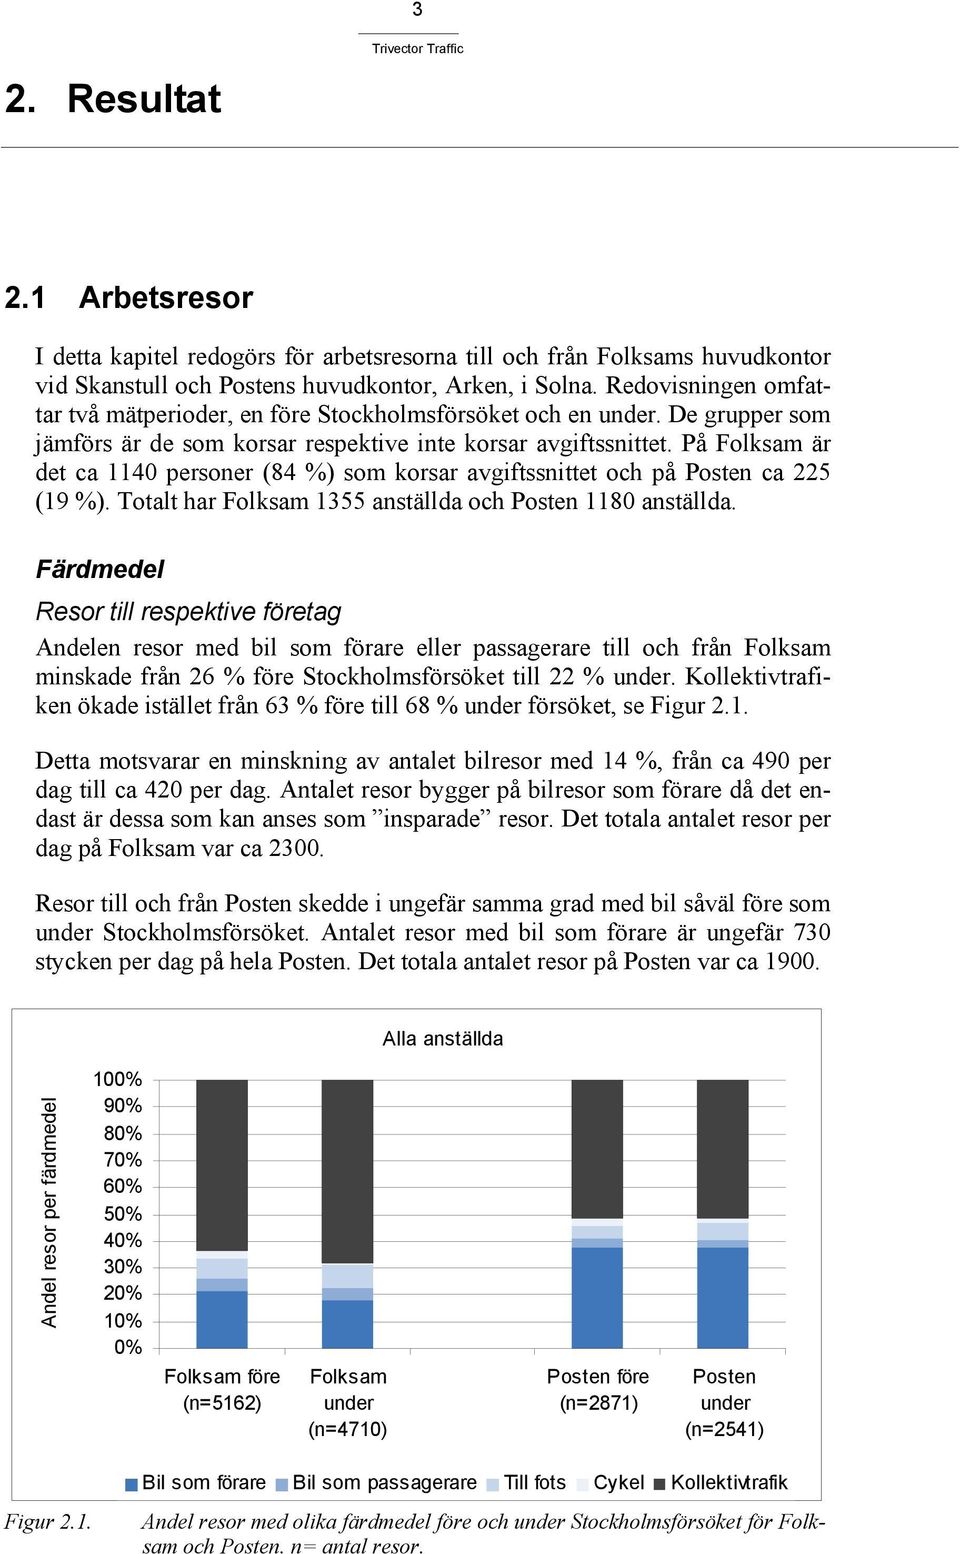 På Folksam är det ca 1140 personer (84 %) som korsar avgiftssnittet och på Posten ca 225 (19 %). Totalt har Folksam 1355 anställda och Posten 1180 anställda.